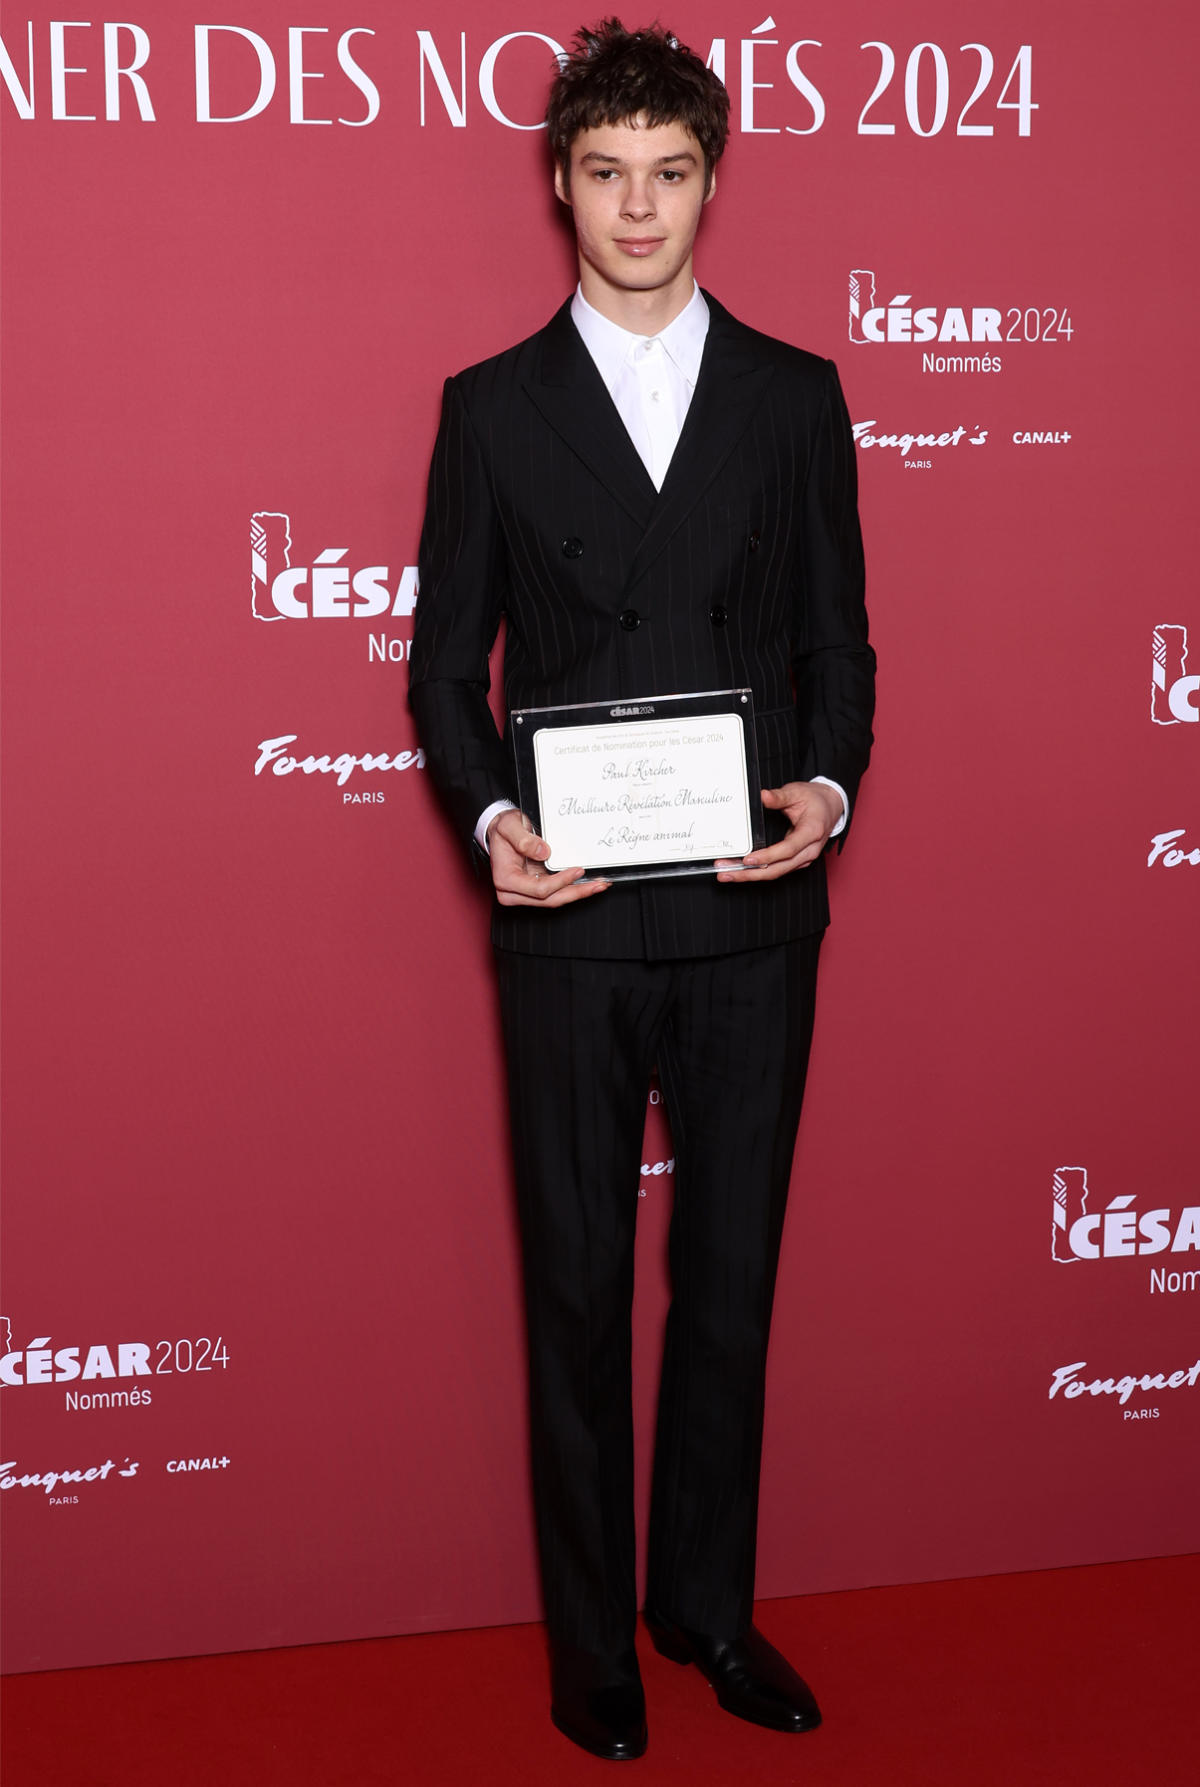 Paul Kircher In Celine Homme At The César Awards Nominees Dinner